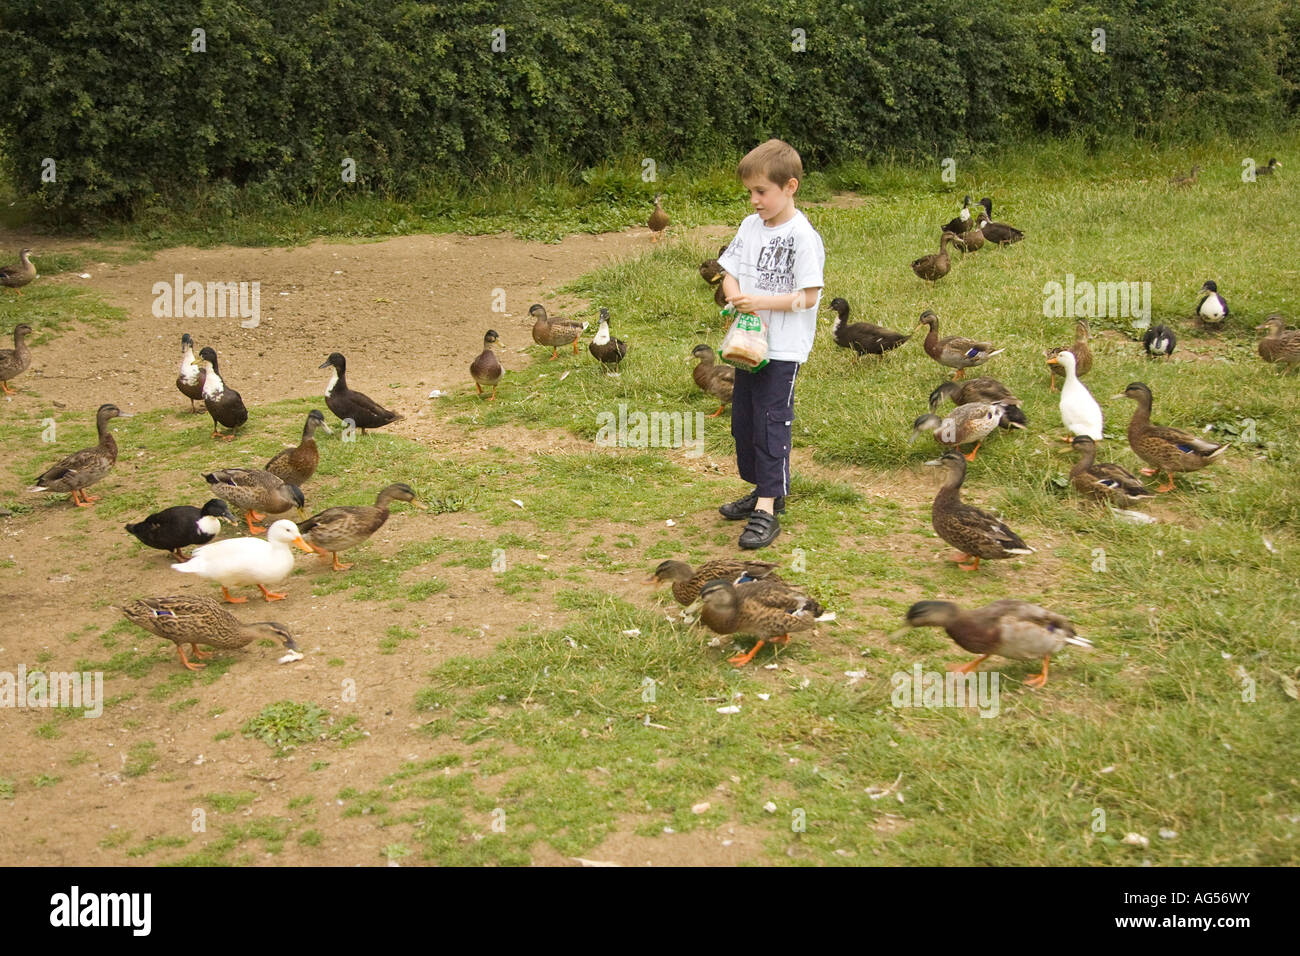 young boy feeding ducks, UK Stock Photo